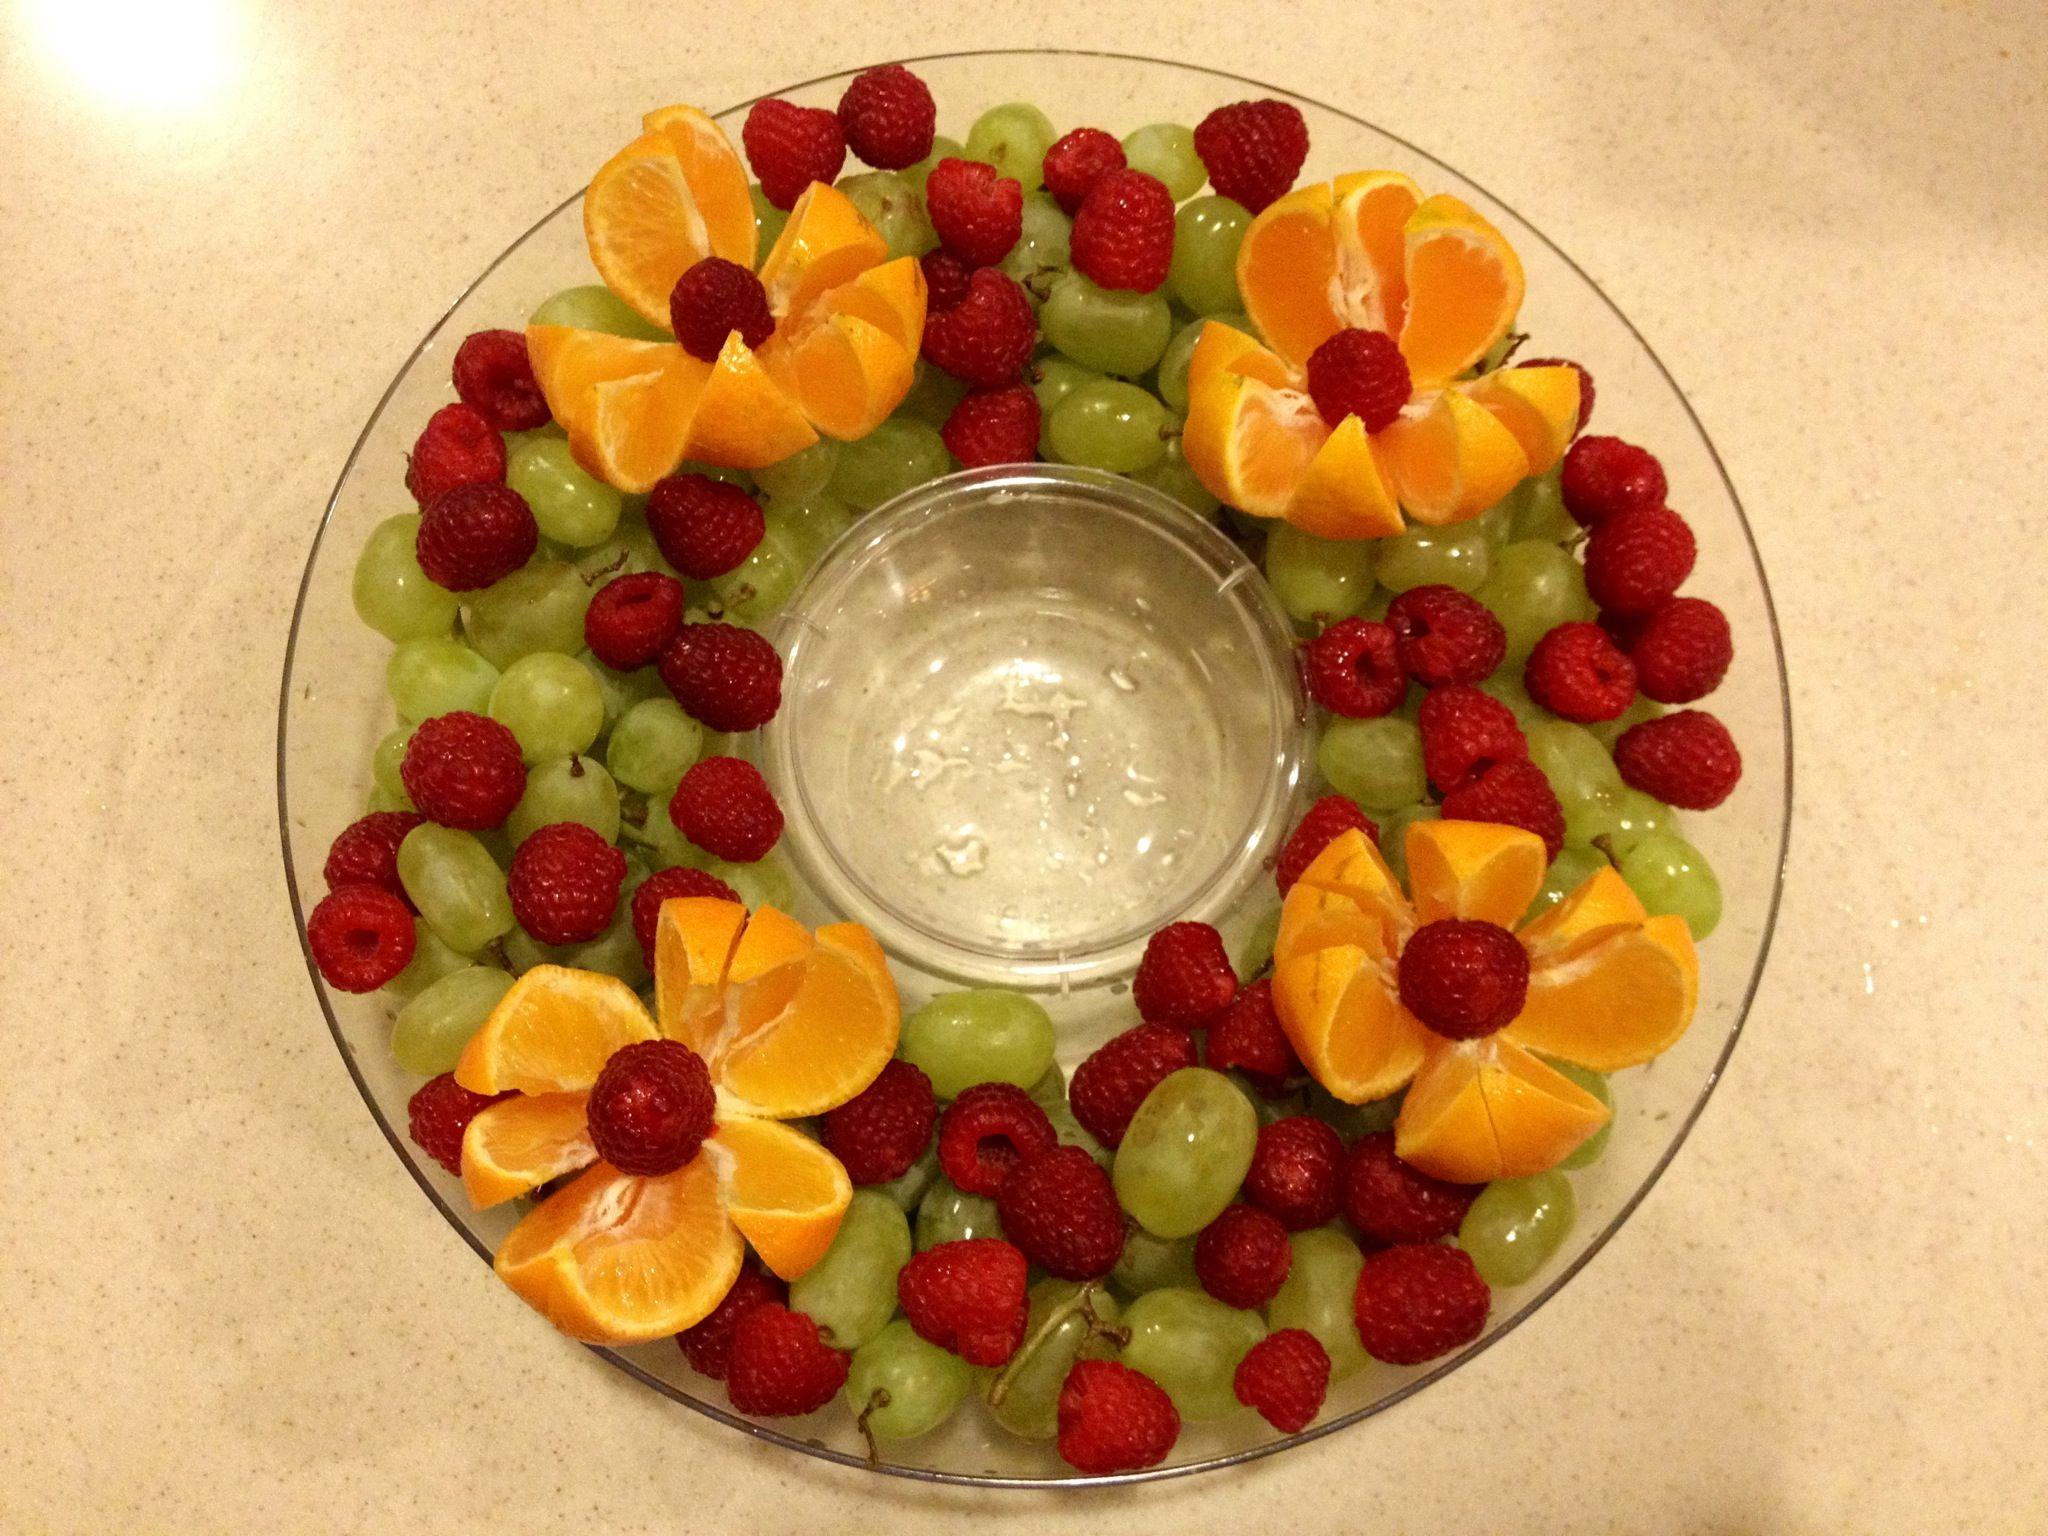 Christmas fruit platter the fresh fruit idea